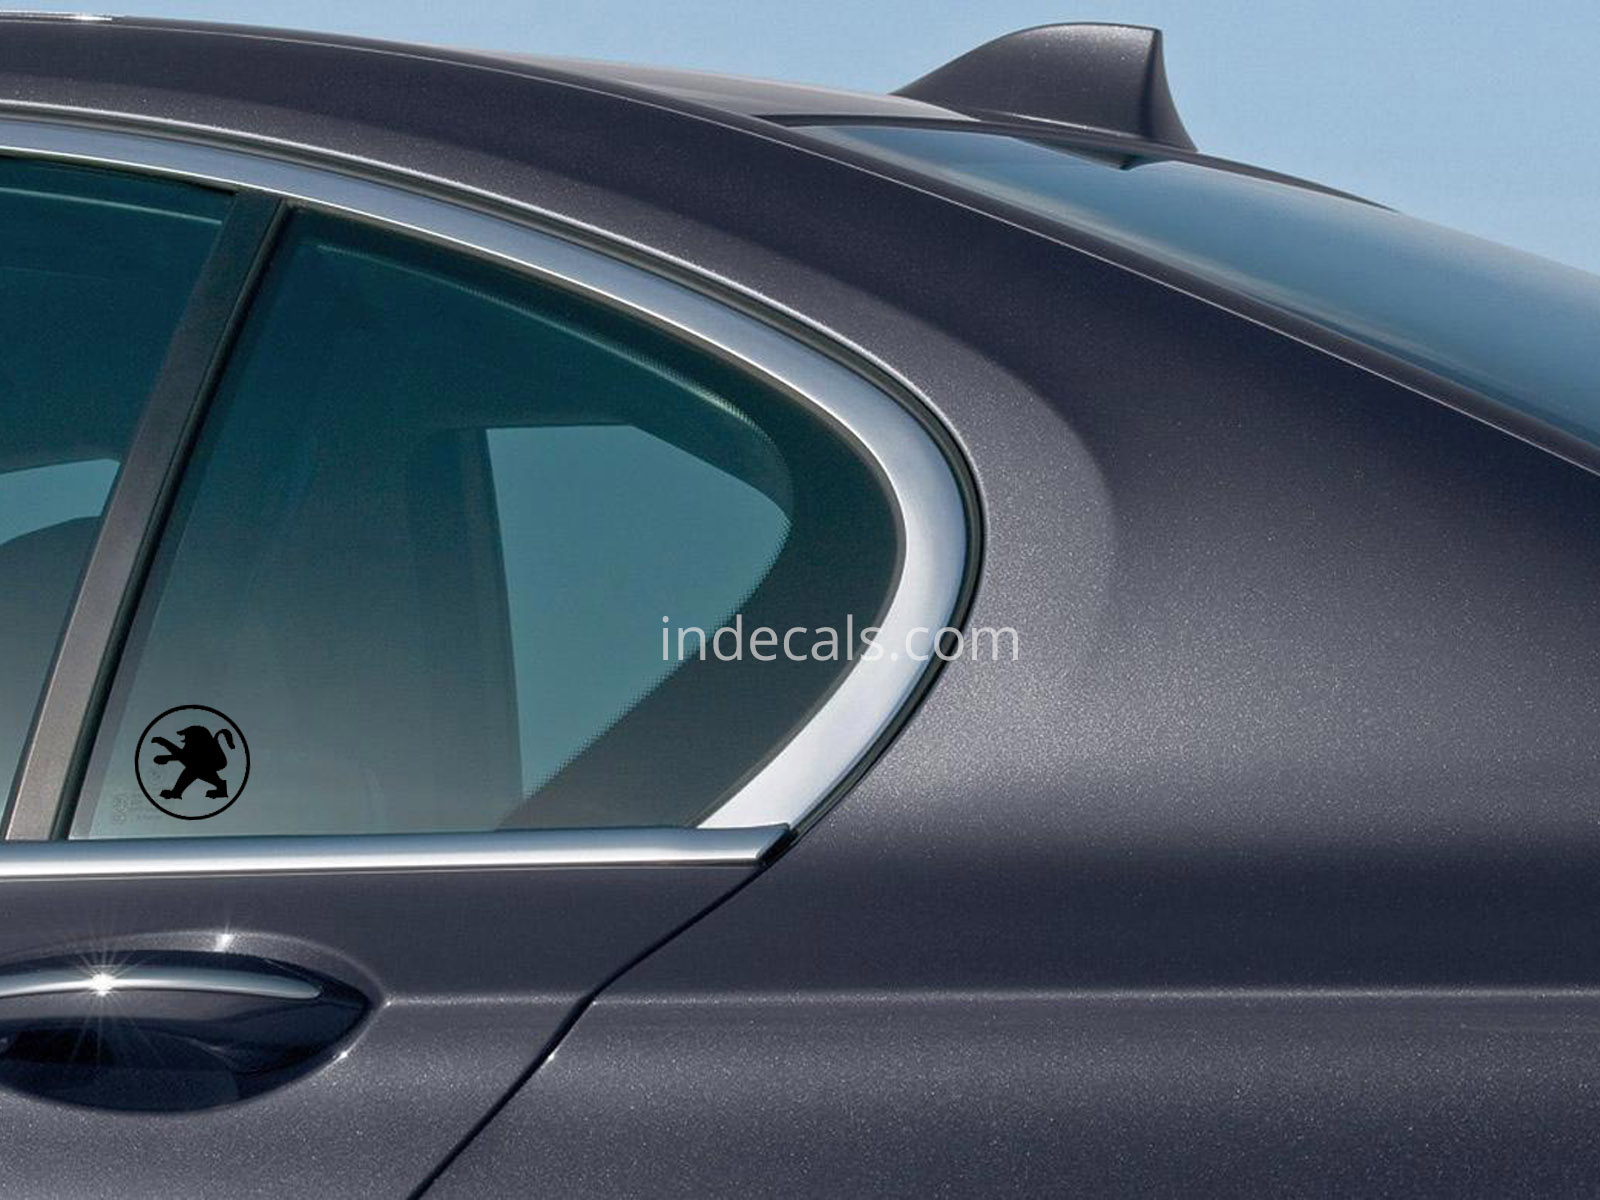 3 x Peugeot Stickers for Rear Window - Black